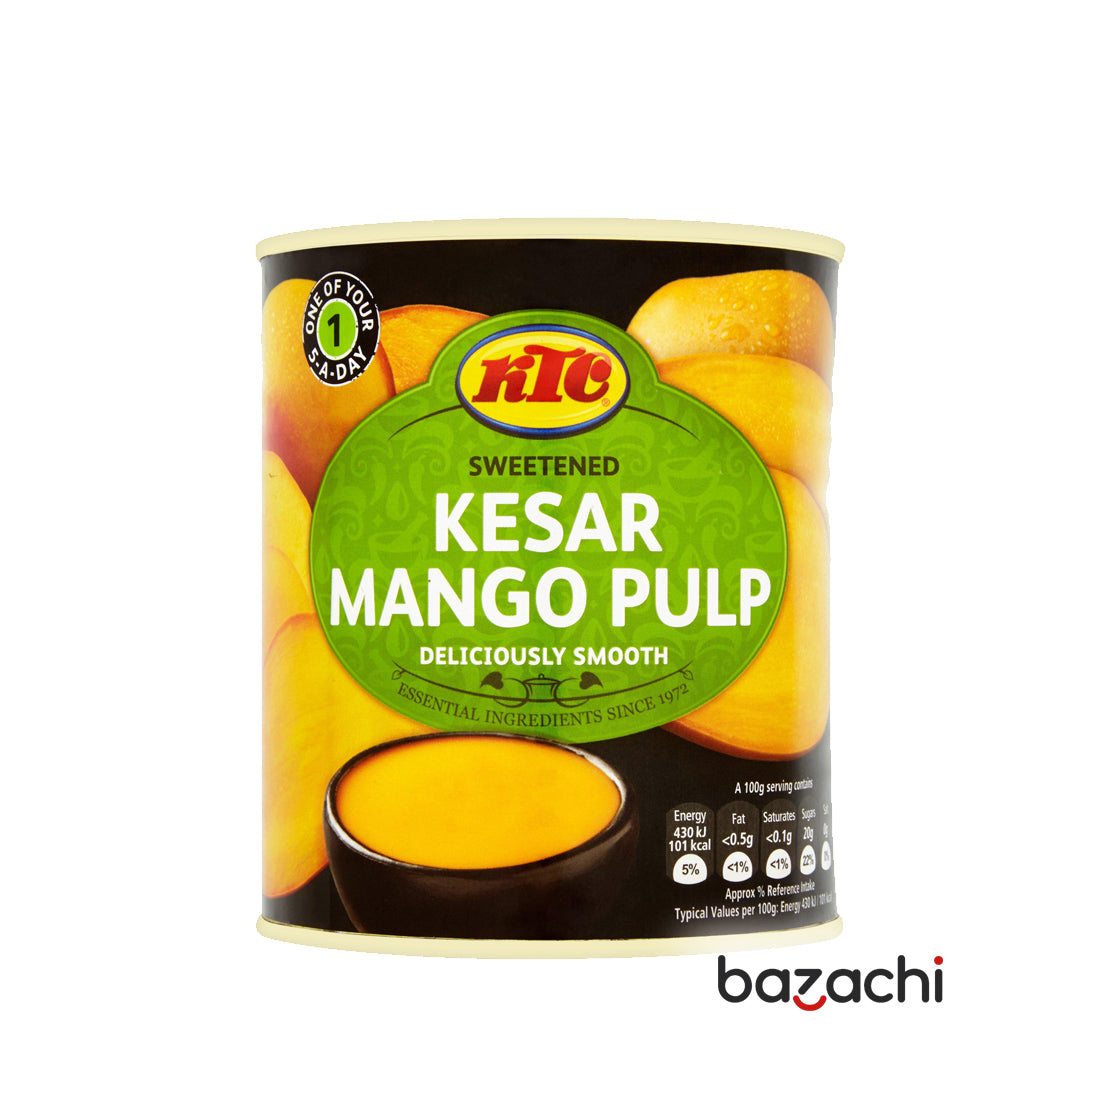 KTC - Sweetened Kesar Mango Pulp 850g